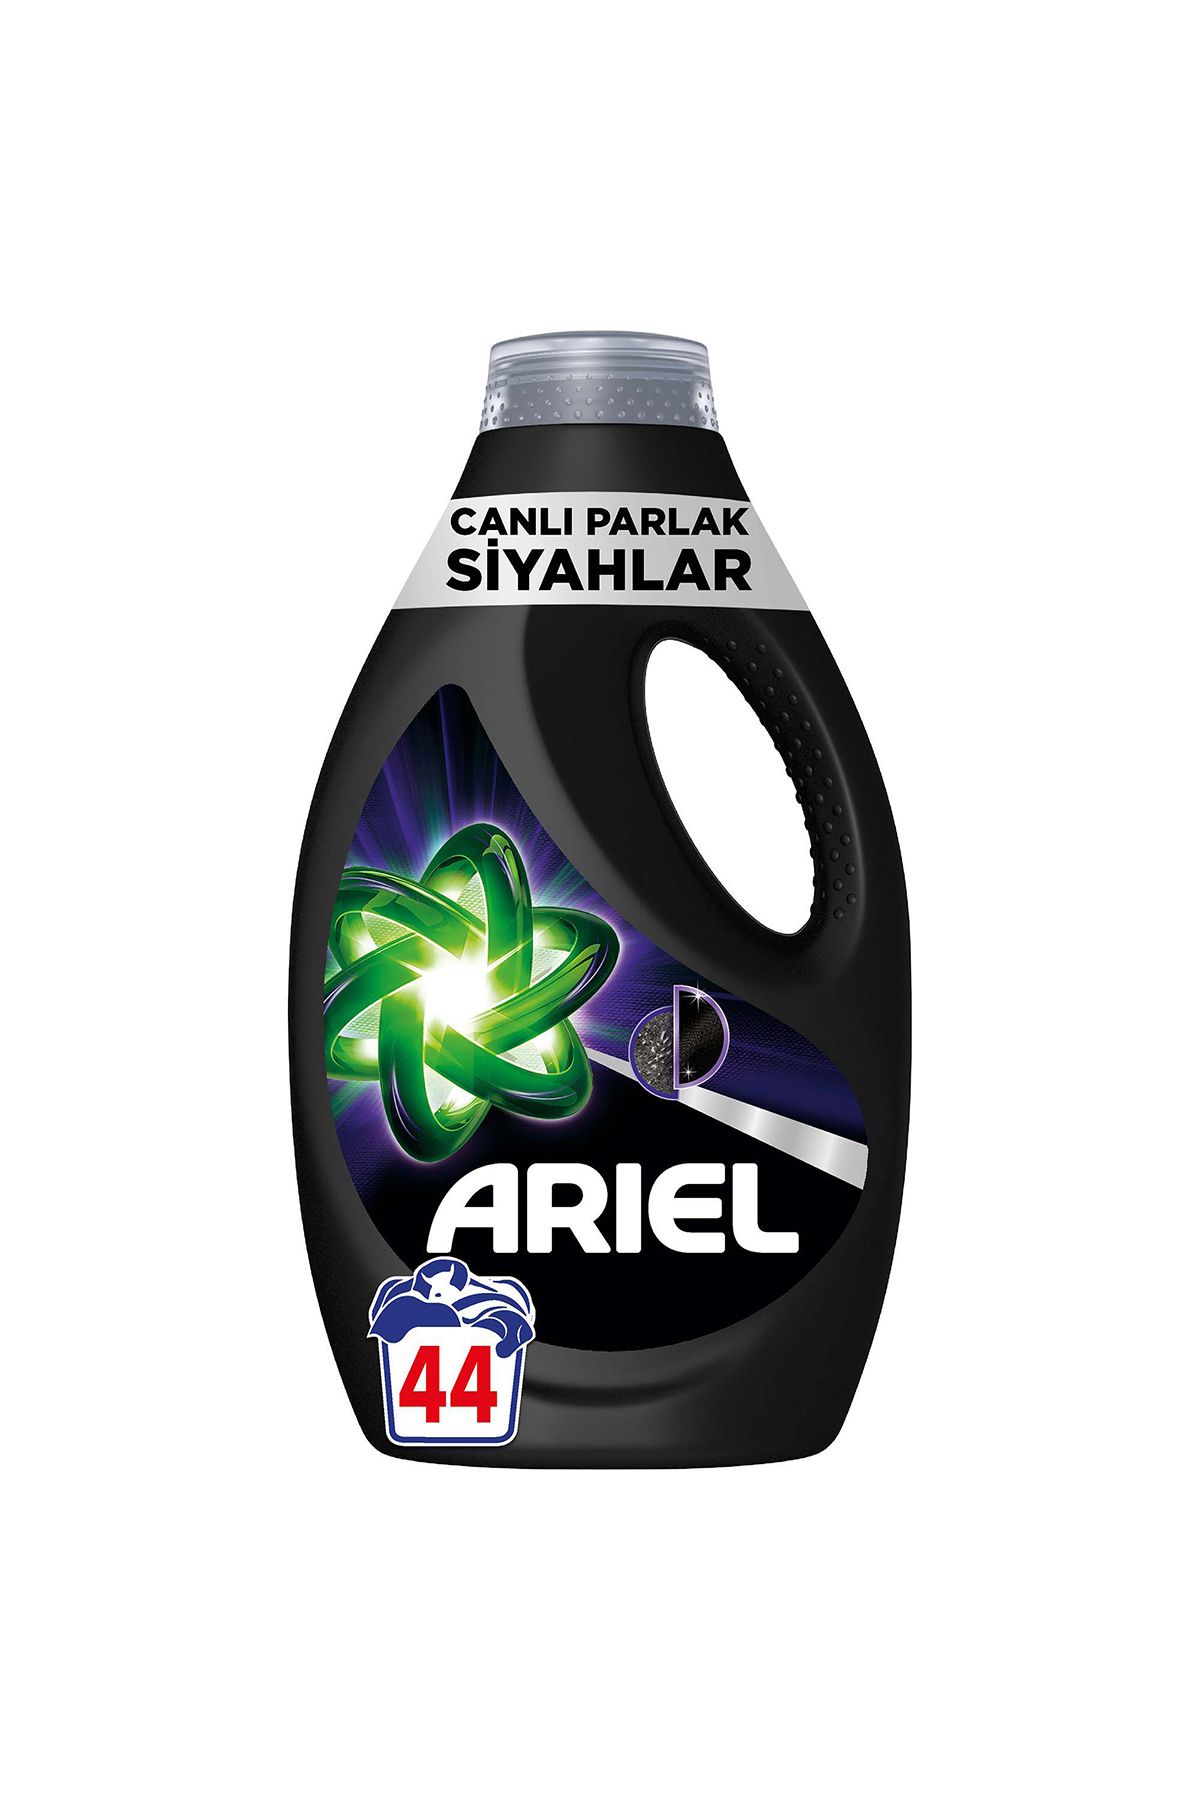 Ariel Canlı Parlak Siyahlar Sıvı Çamaşır Deterjanı 44 Yıkama